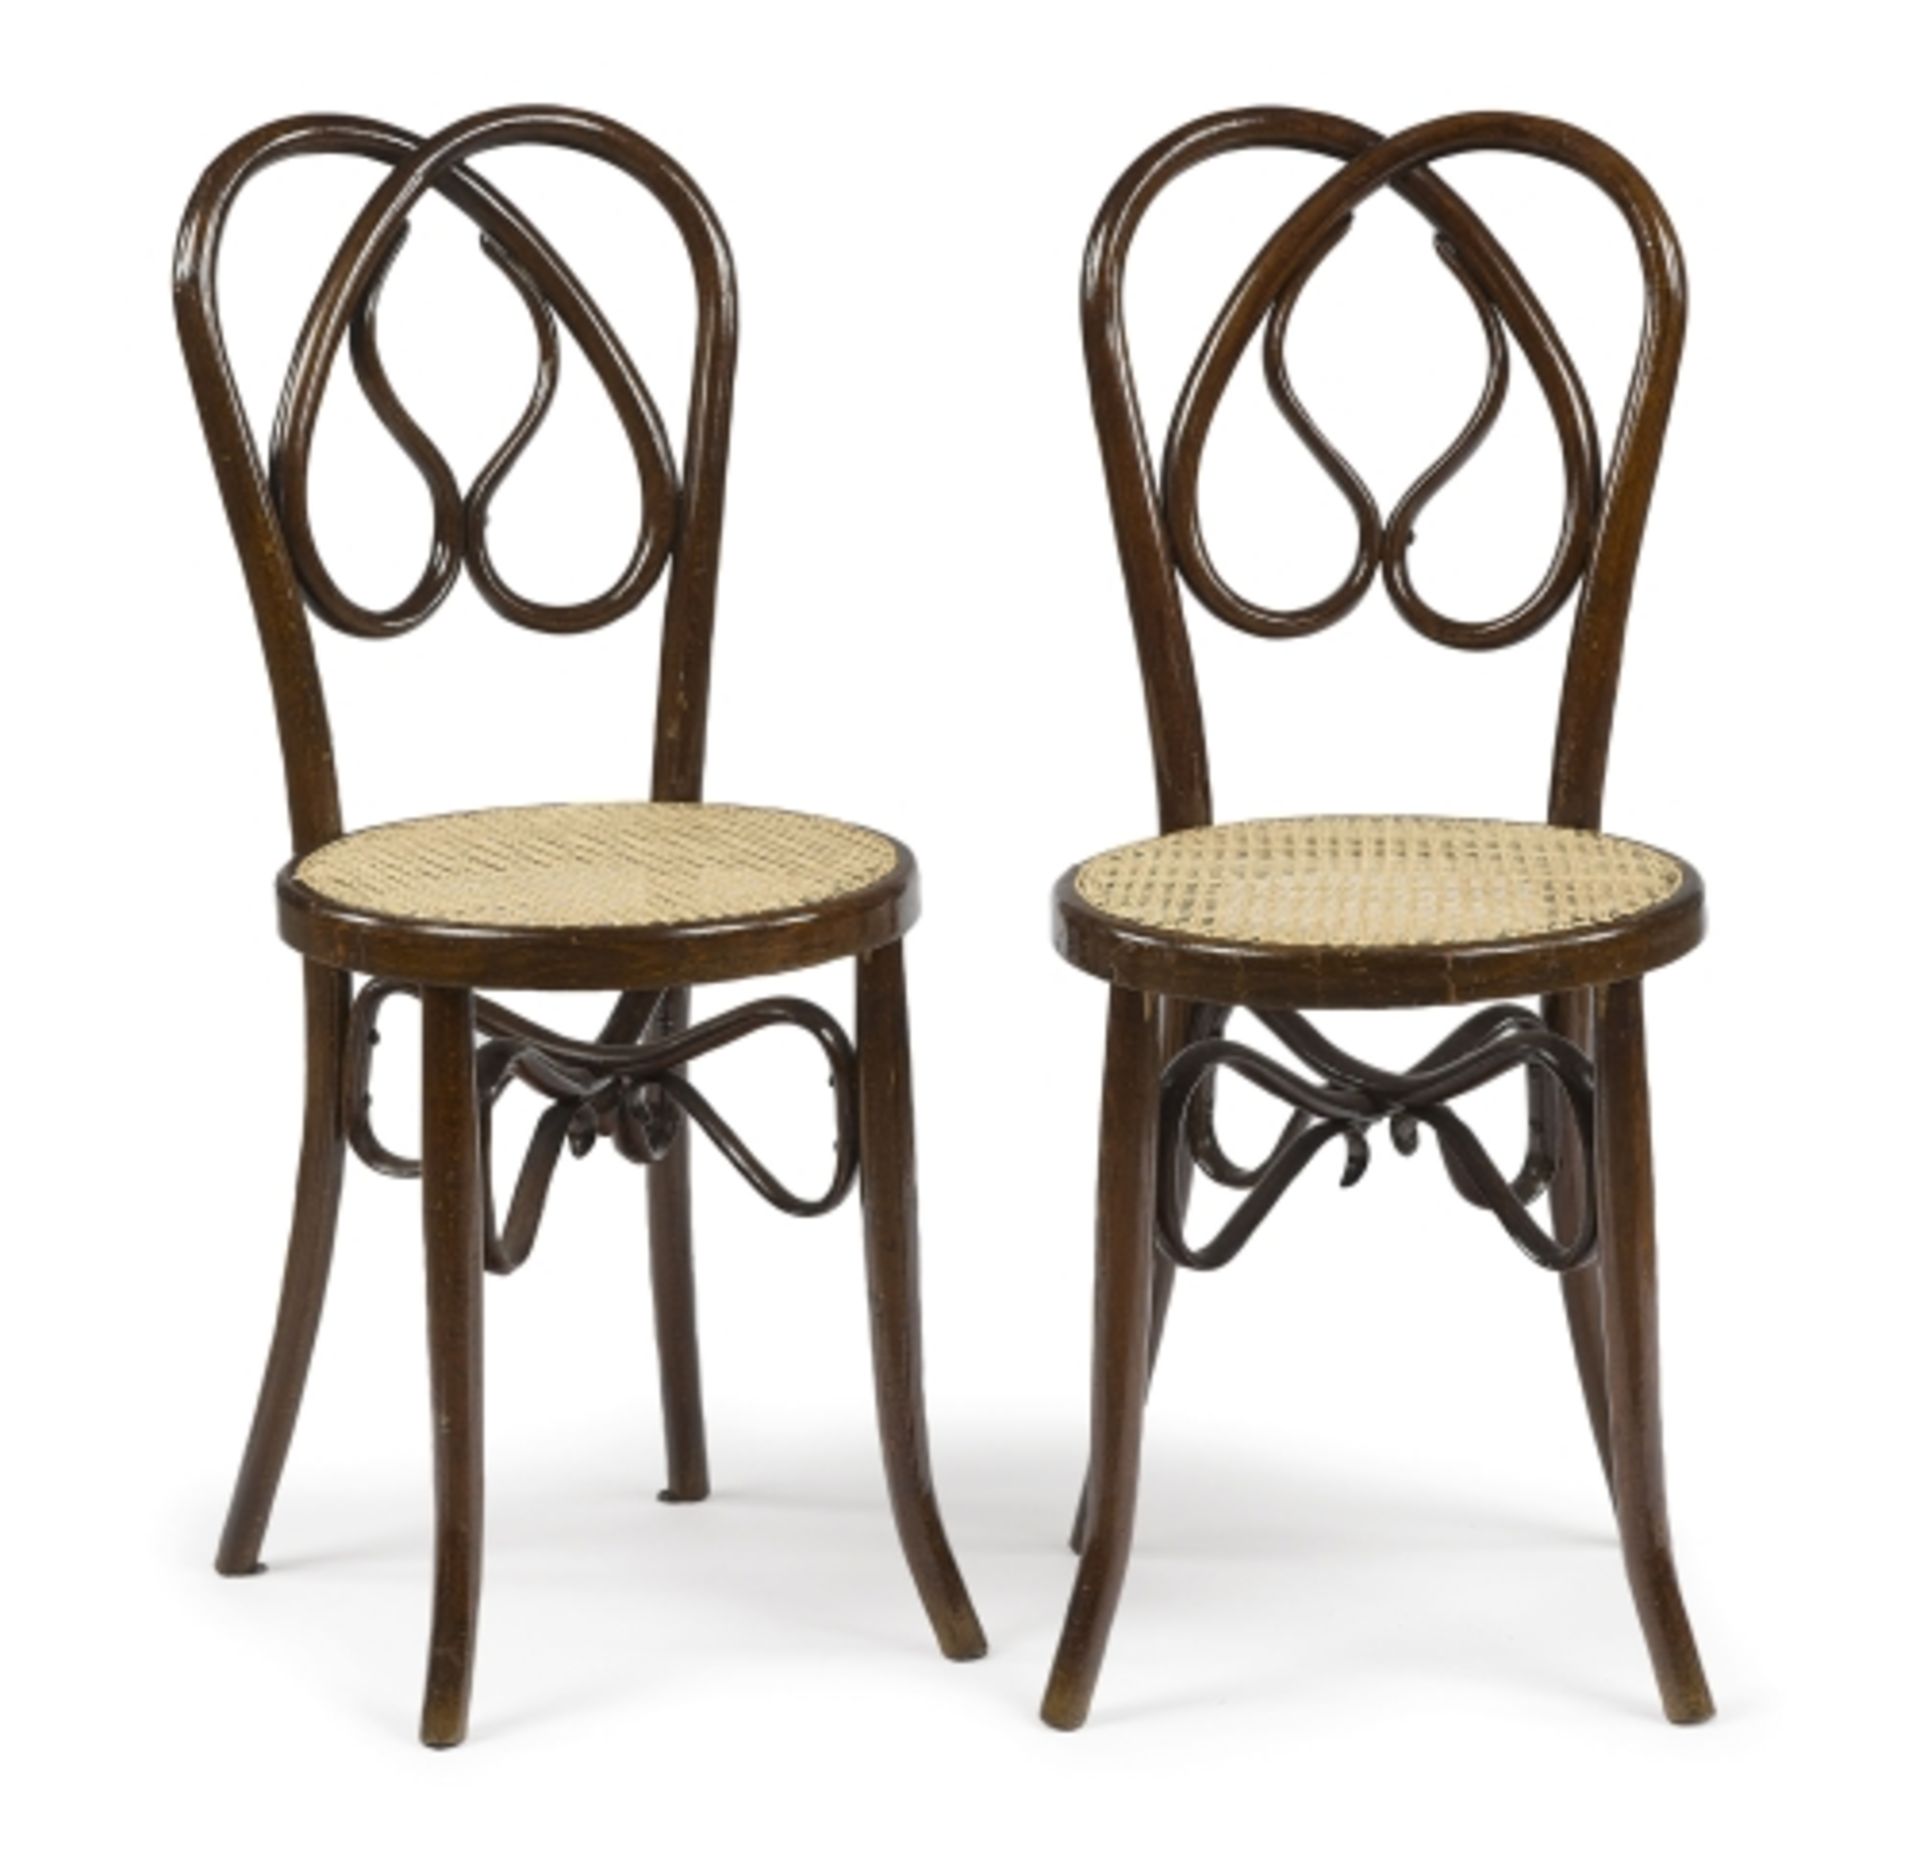 Ein Paar StühleWien, Thonet-Art, um 1890 Buche, gebogen. Rötlich-braun gebeizt. Geschweifte